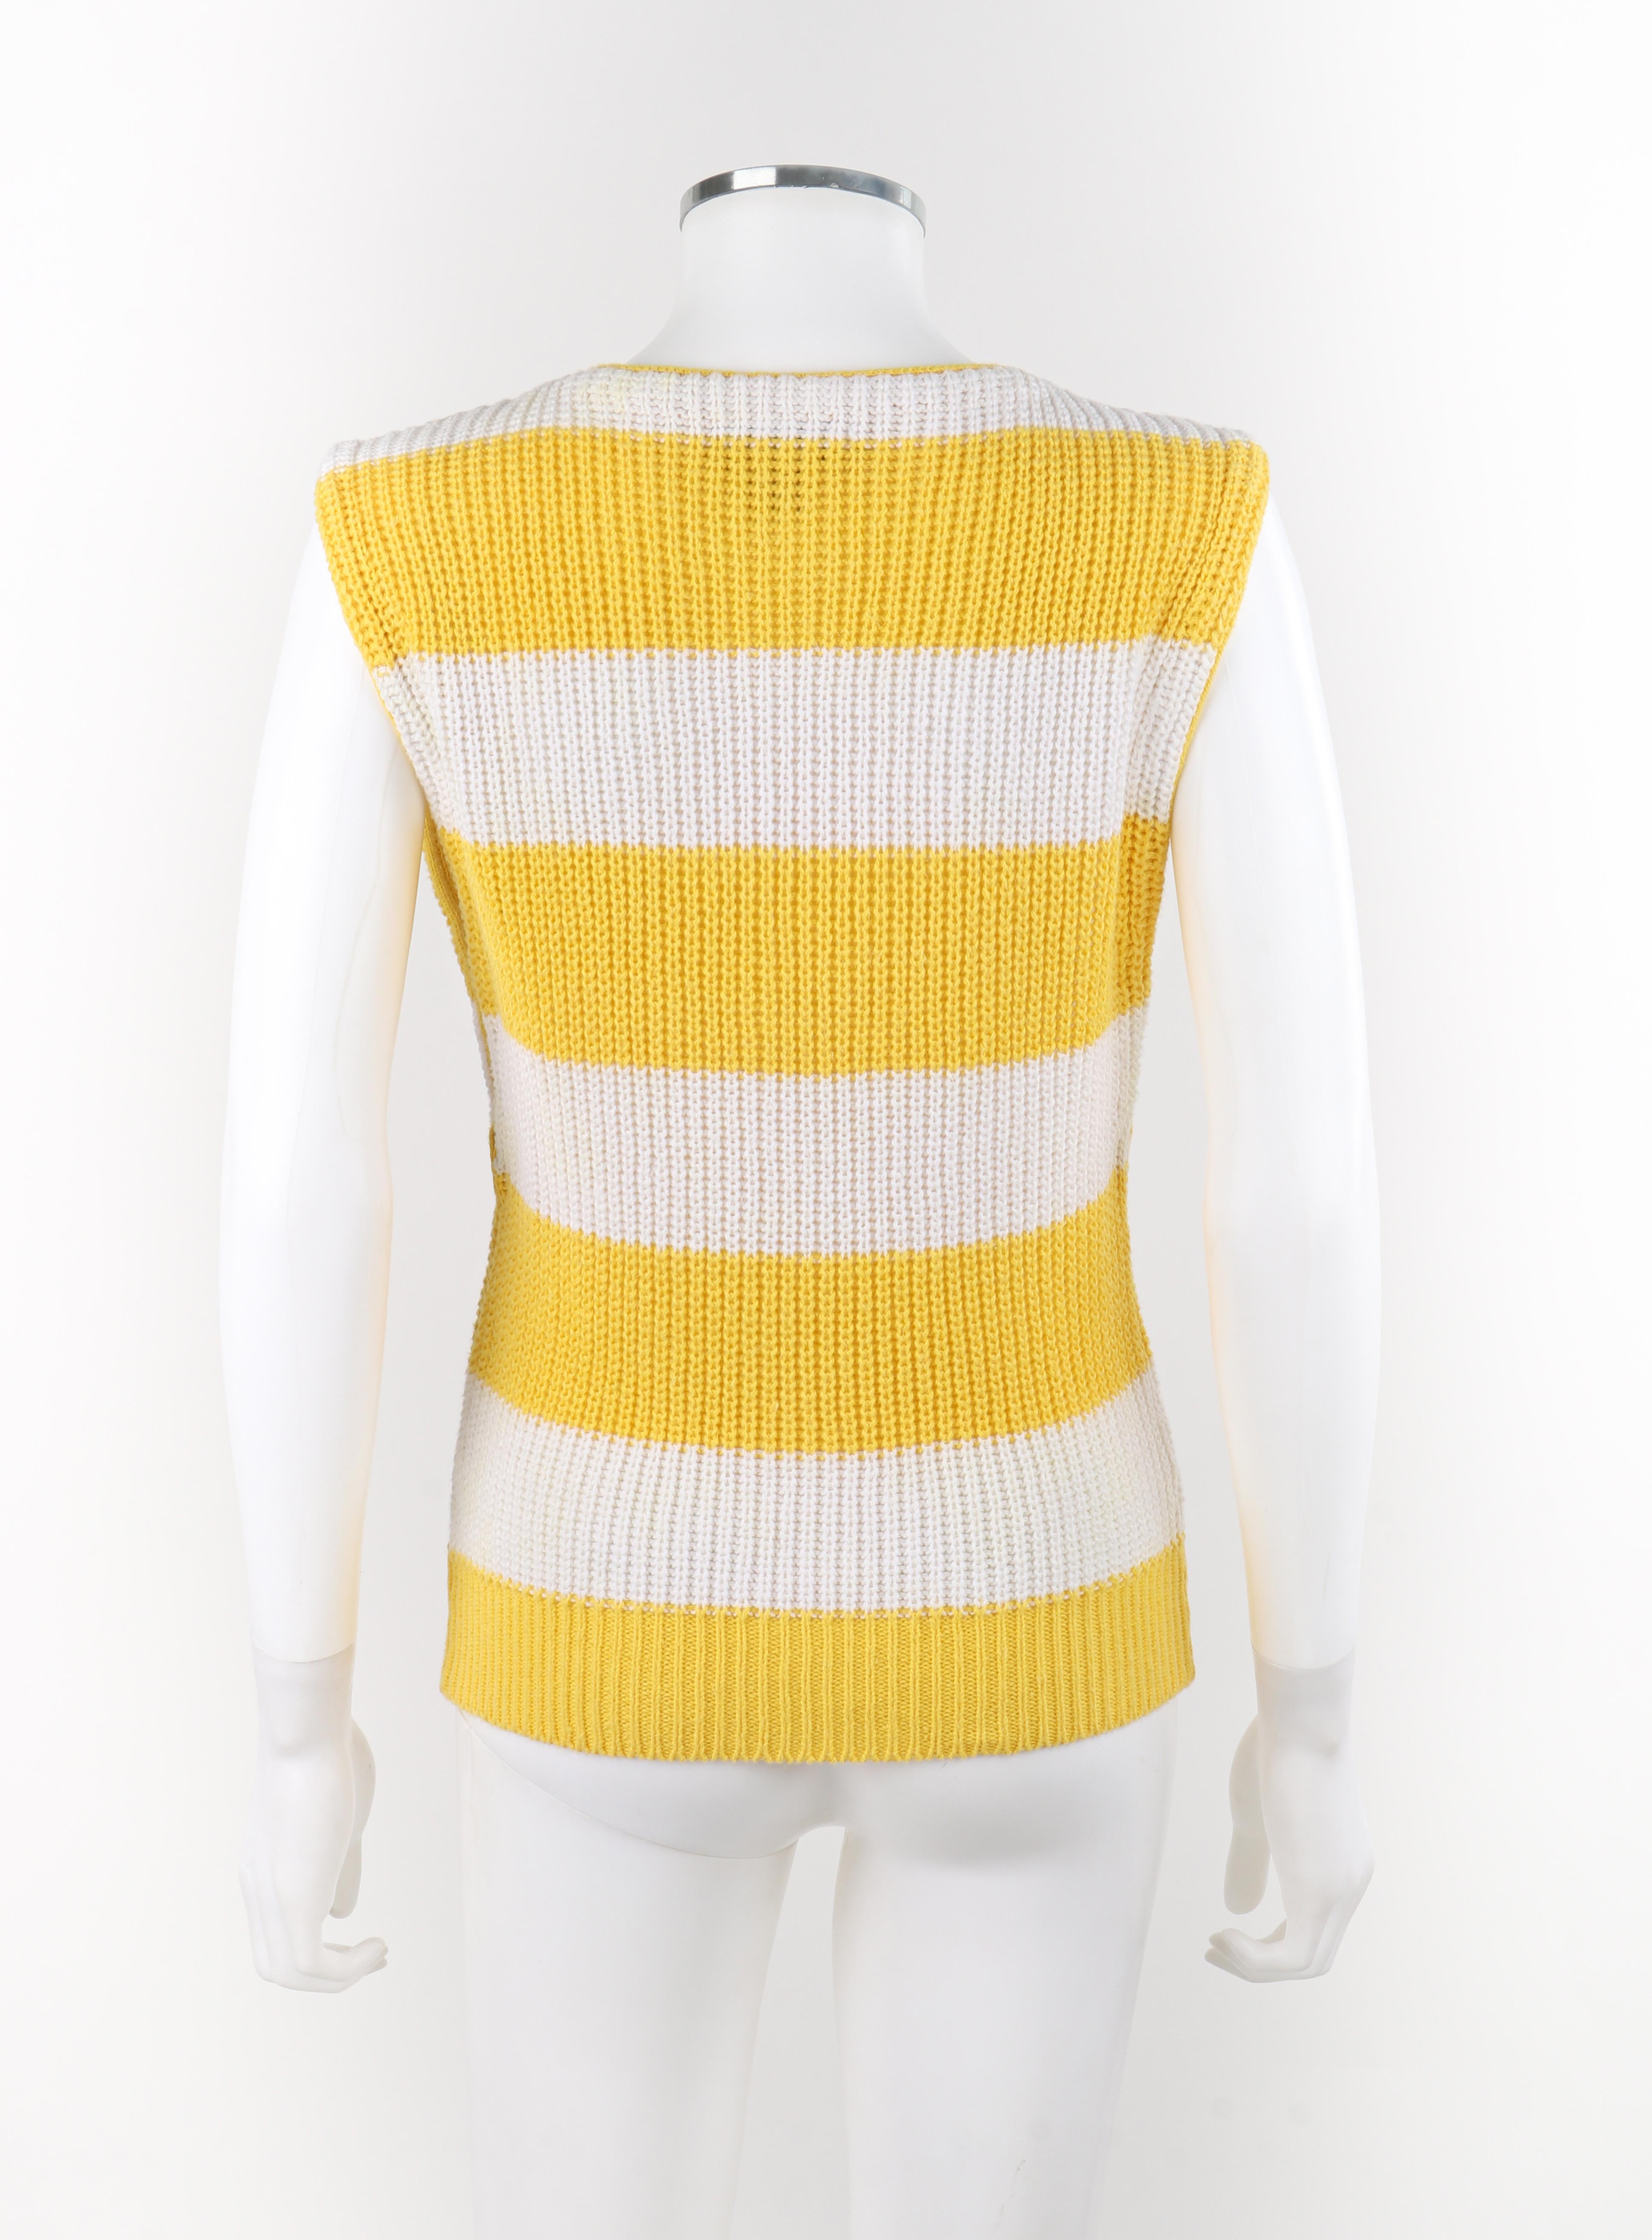 DIANE VON FURSTENBERG - Pull sans manches en tricot rayé jaune et blanc, années 1980 Pour femmes en vente